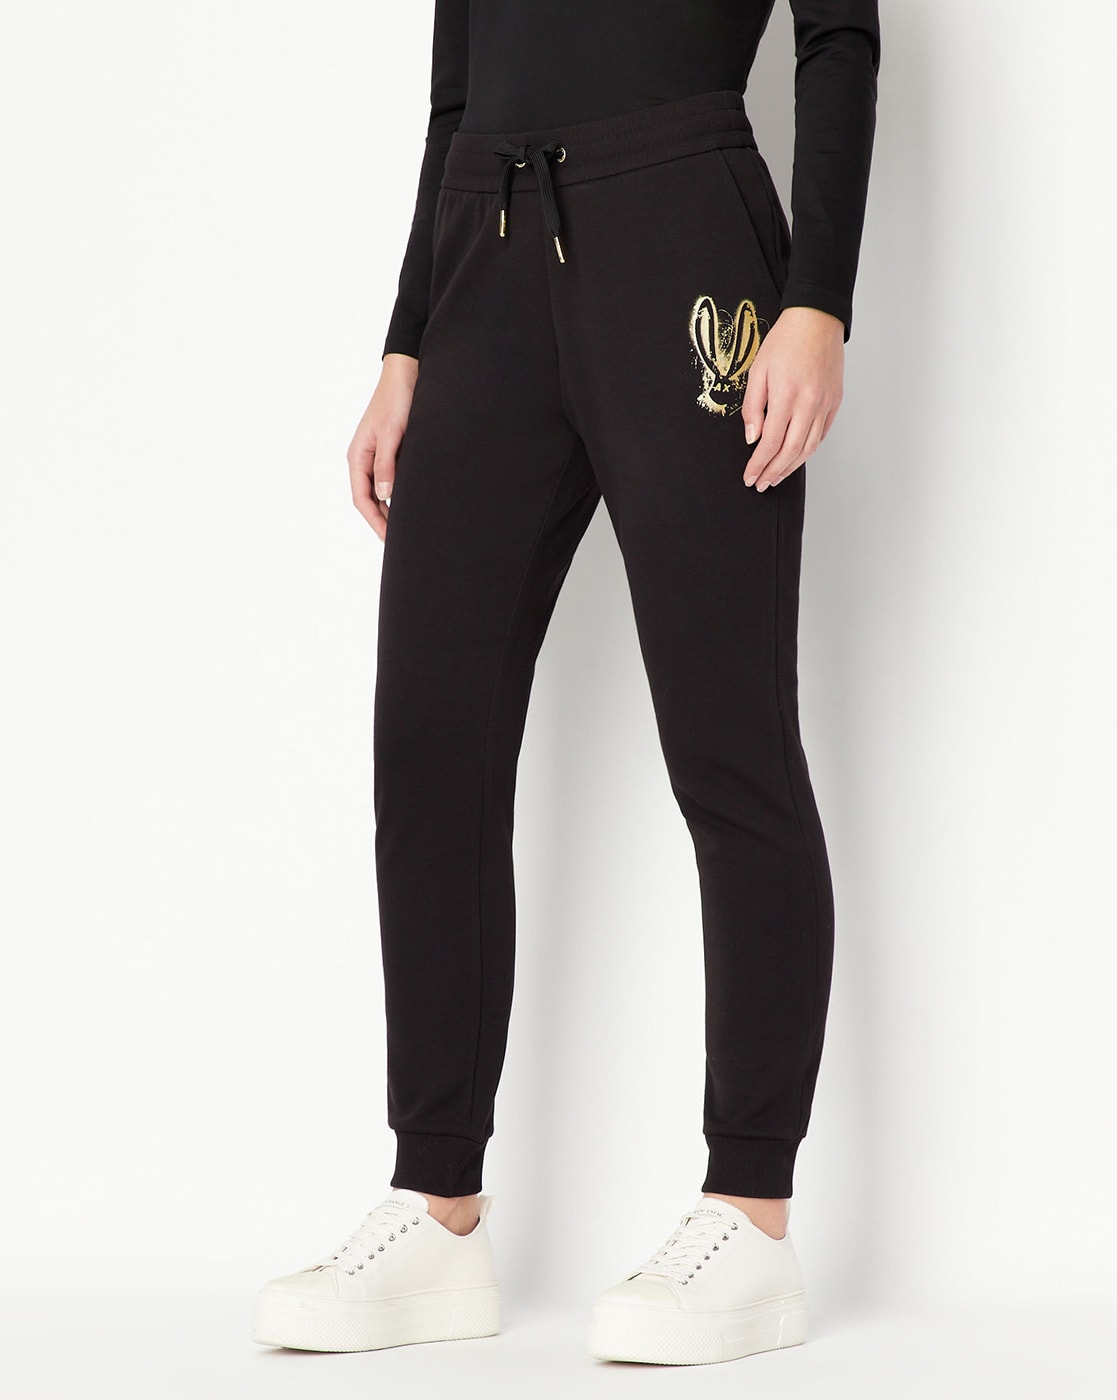 Buy Grey Track Pants for Women by VAN HEUSEN Online | Ajio.com